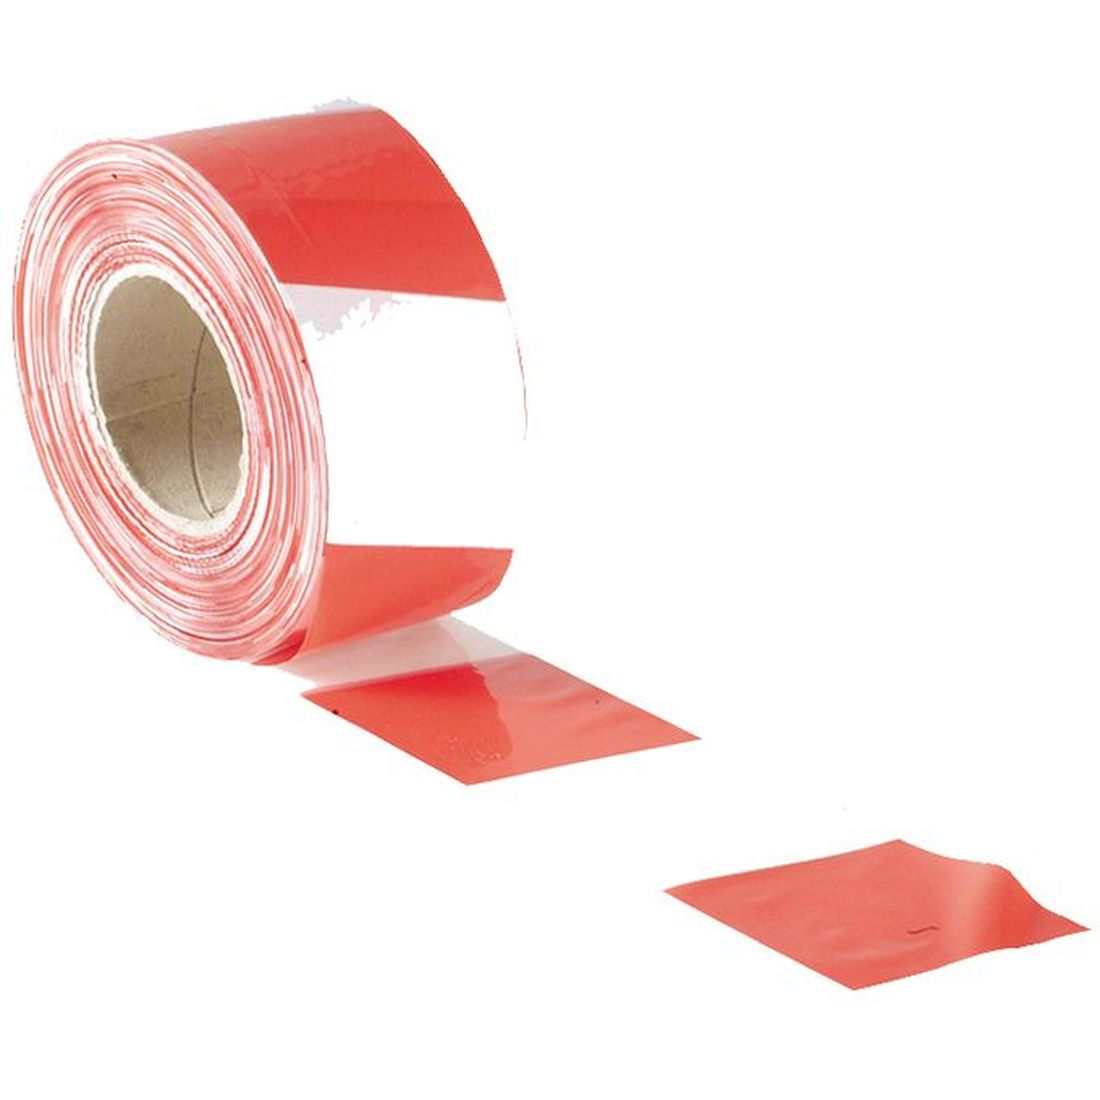 Faithfull Barrier Tape 70mm x 500m Red & White                                            